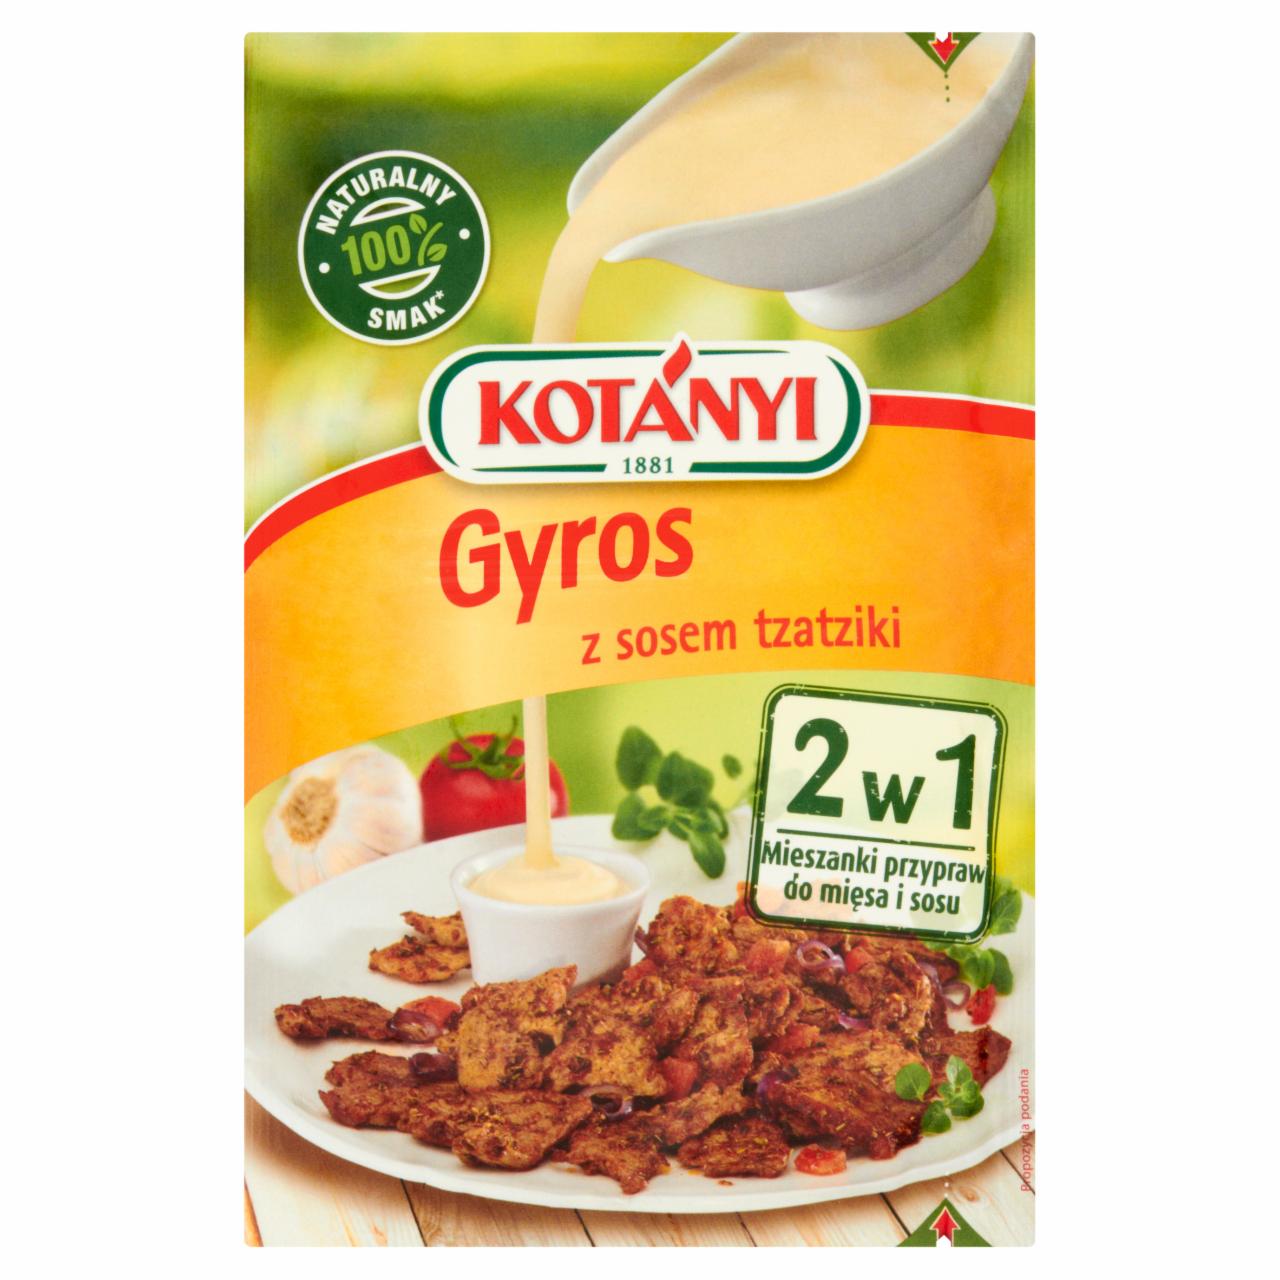 Zdjęcia - Kotányi 2w1 Gyros z sosem tzatziki Mieszanki przypraw do mięsa i sosu 37 g